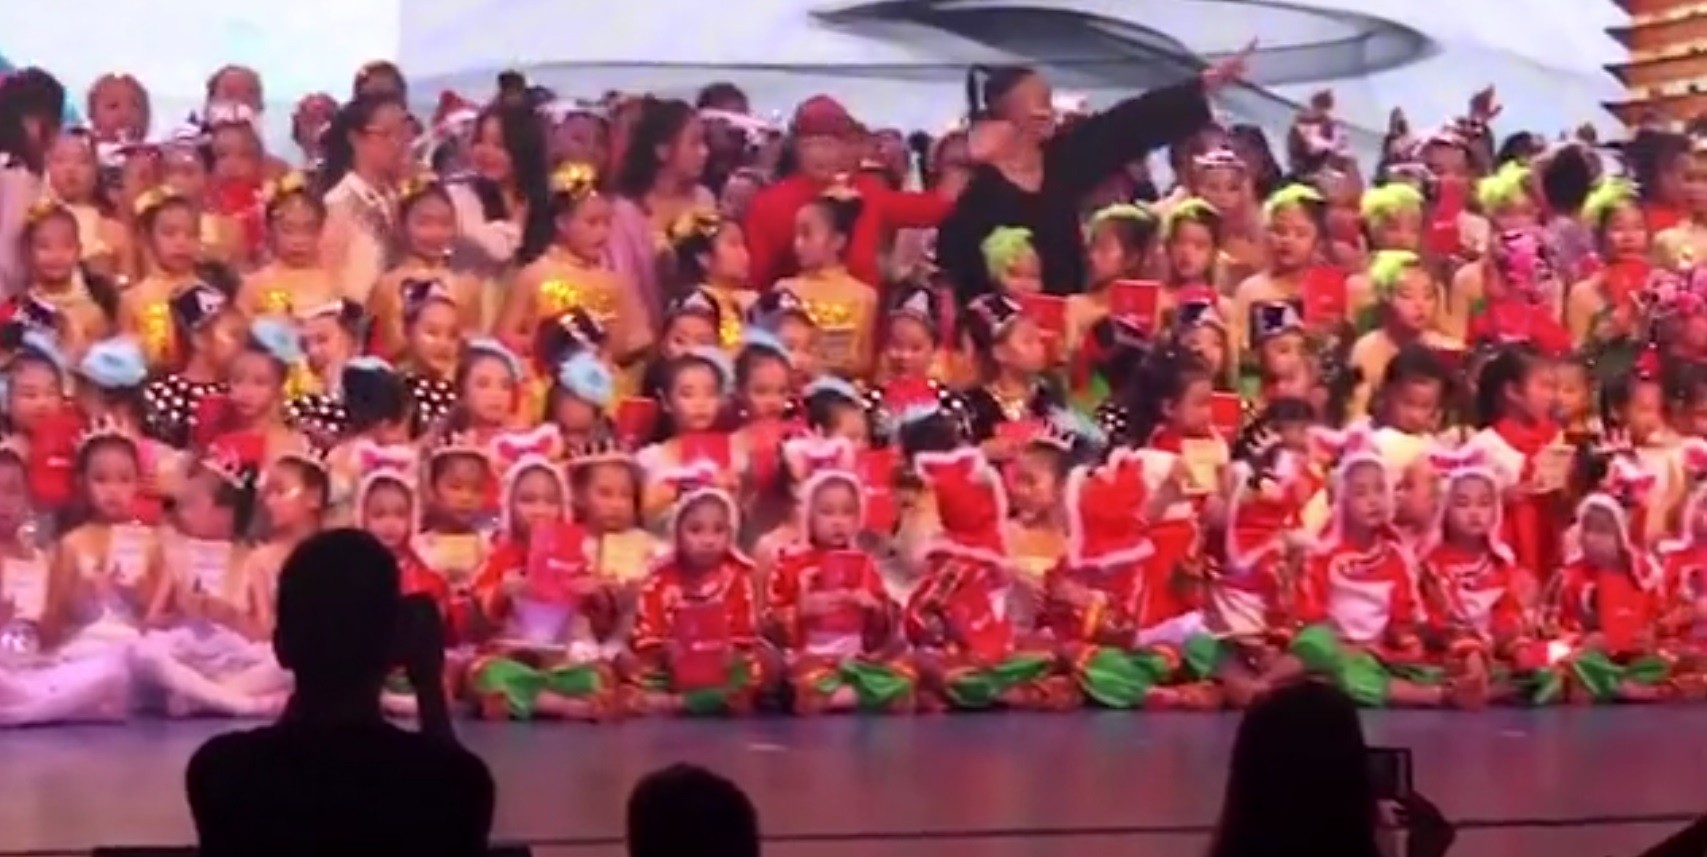 Crianças segundos antes do palco desabar (Foto: Reprodução Youtube)